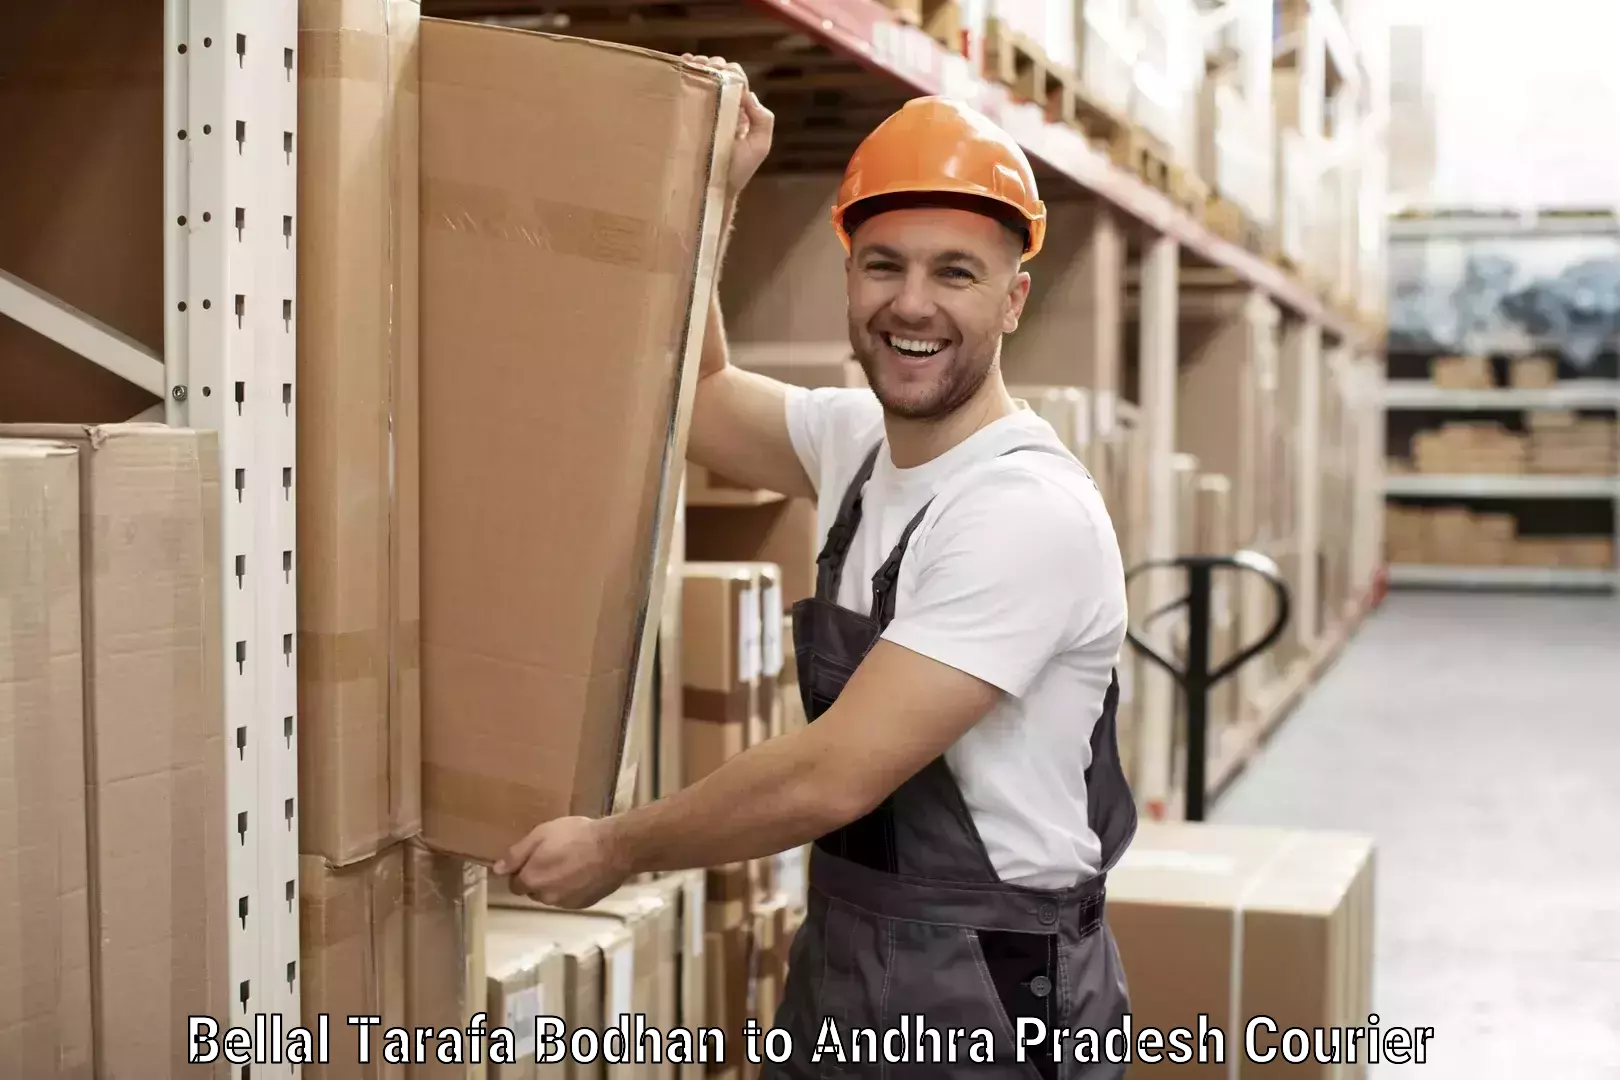 High-speed parcel service Bellal Tarafa Bodhan to Andhra Pradesh